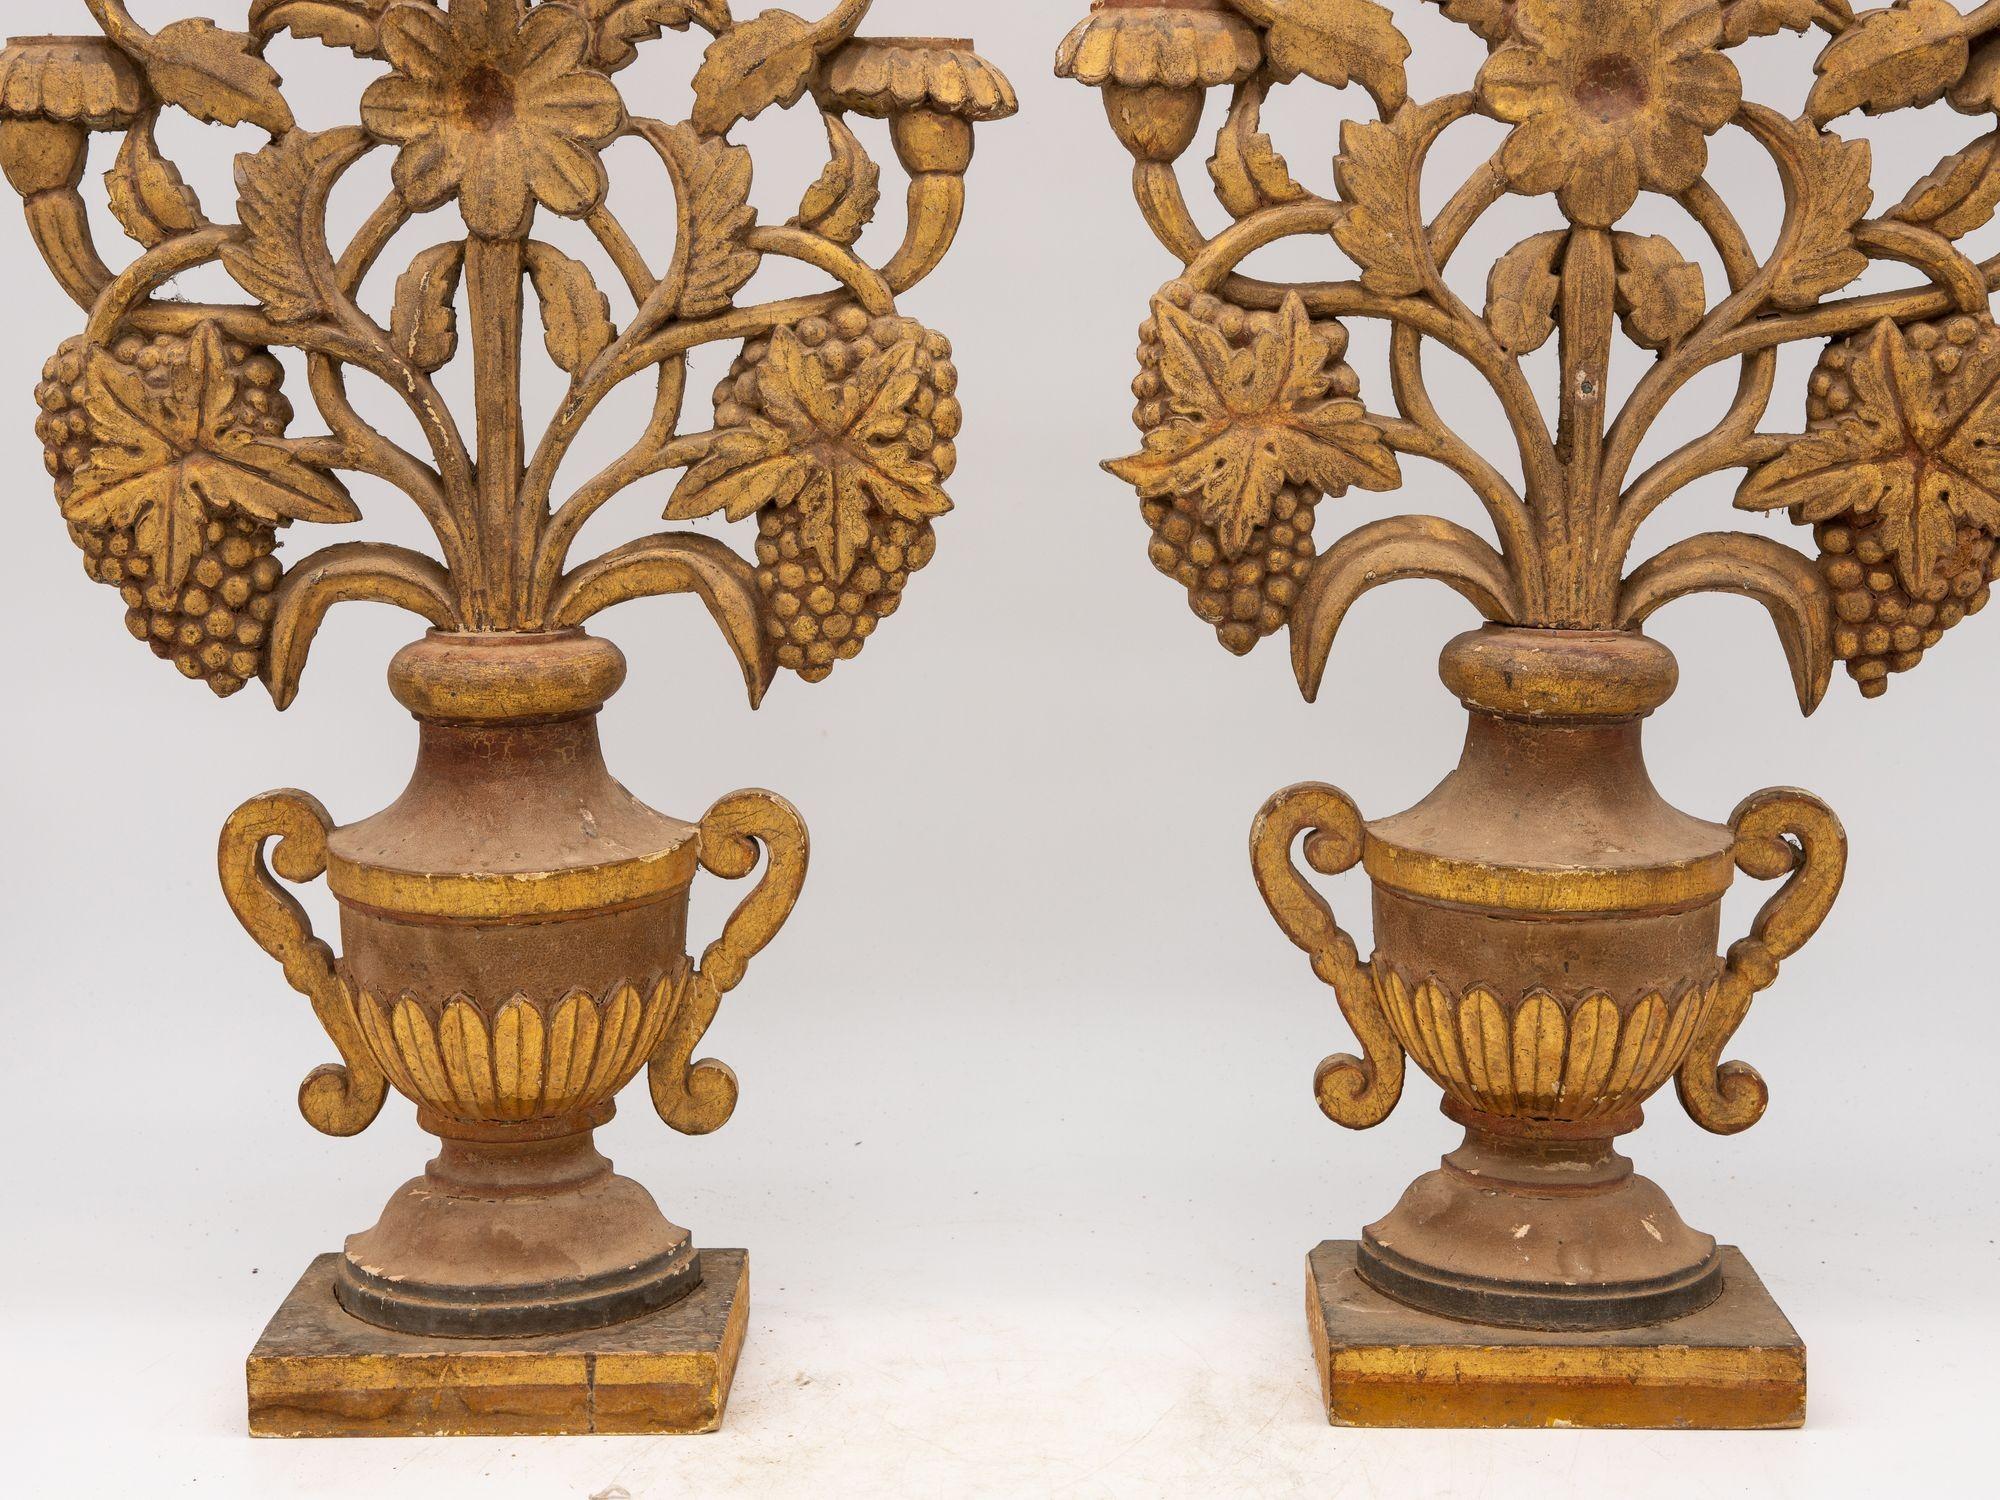 

Exquise et inhabituelle, cette paire d'urnes anciennes en bois sculpté, datant de la fin du XIXe siècle en France, séduit par son élégance intemporelle. Chaque urne, qui fait office d'ornement de manteau, est le fruit d'un travail artisanal